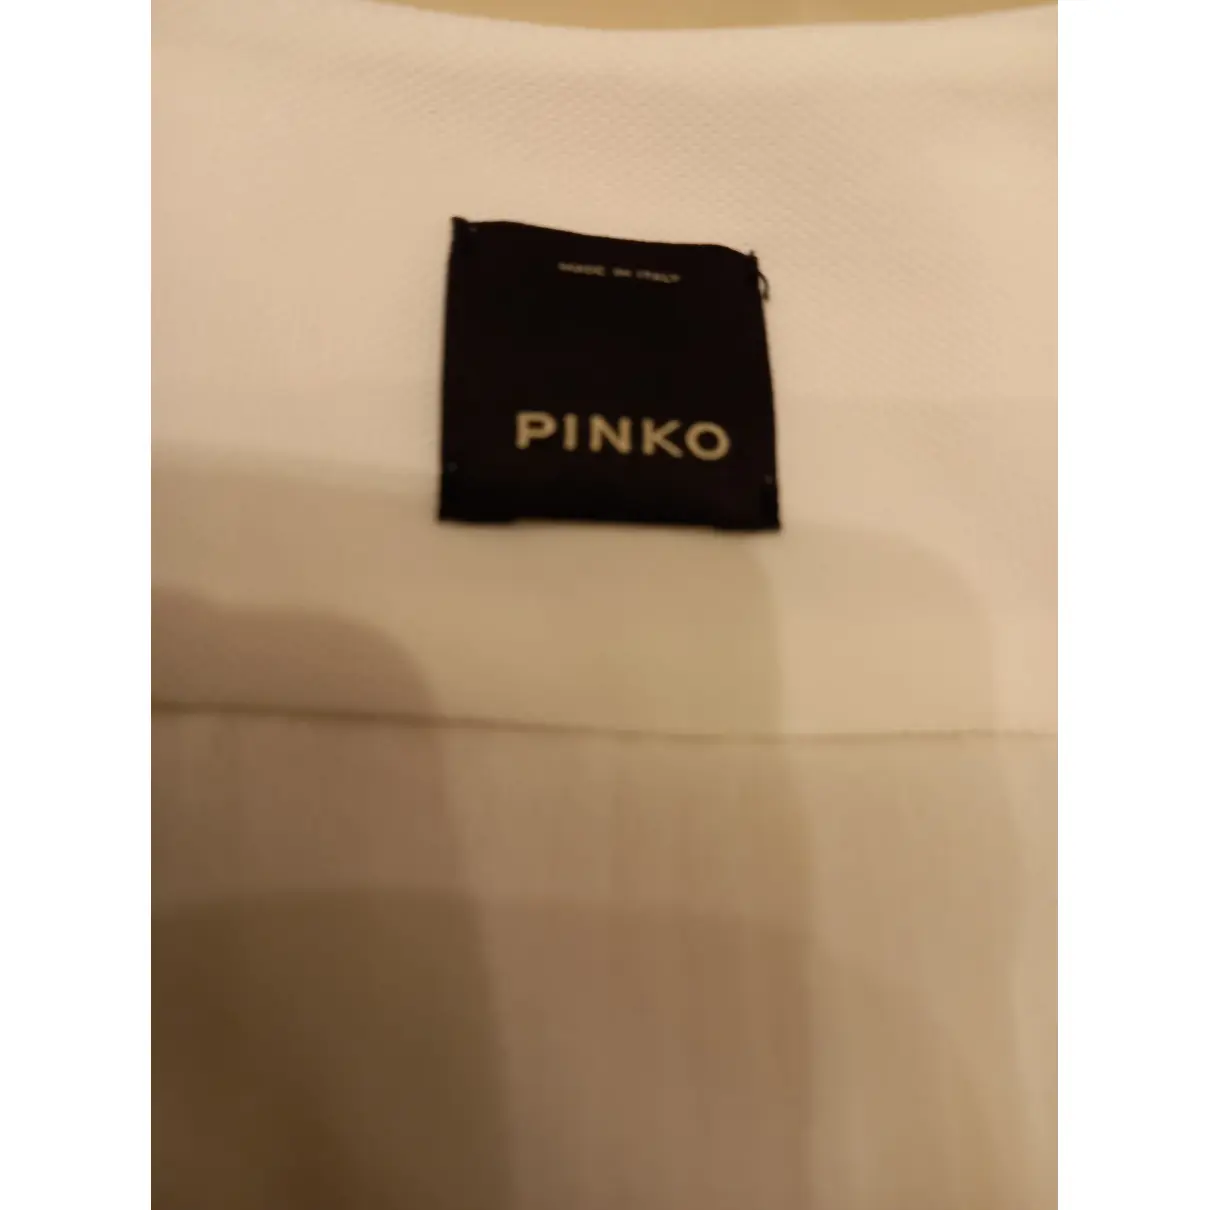 Buy Pinko Top online